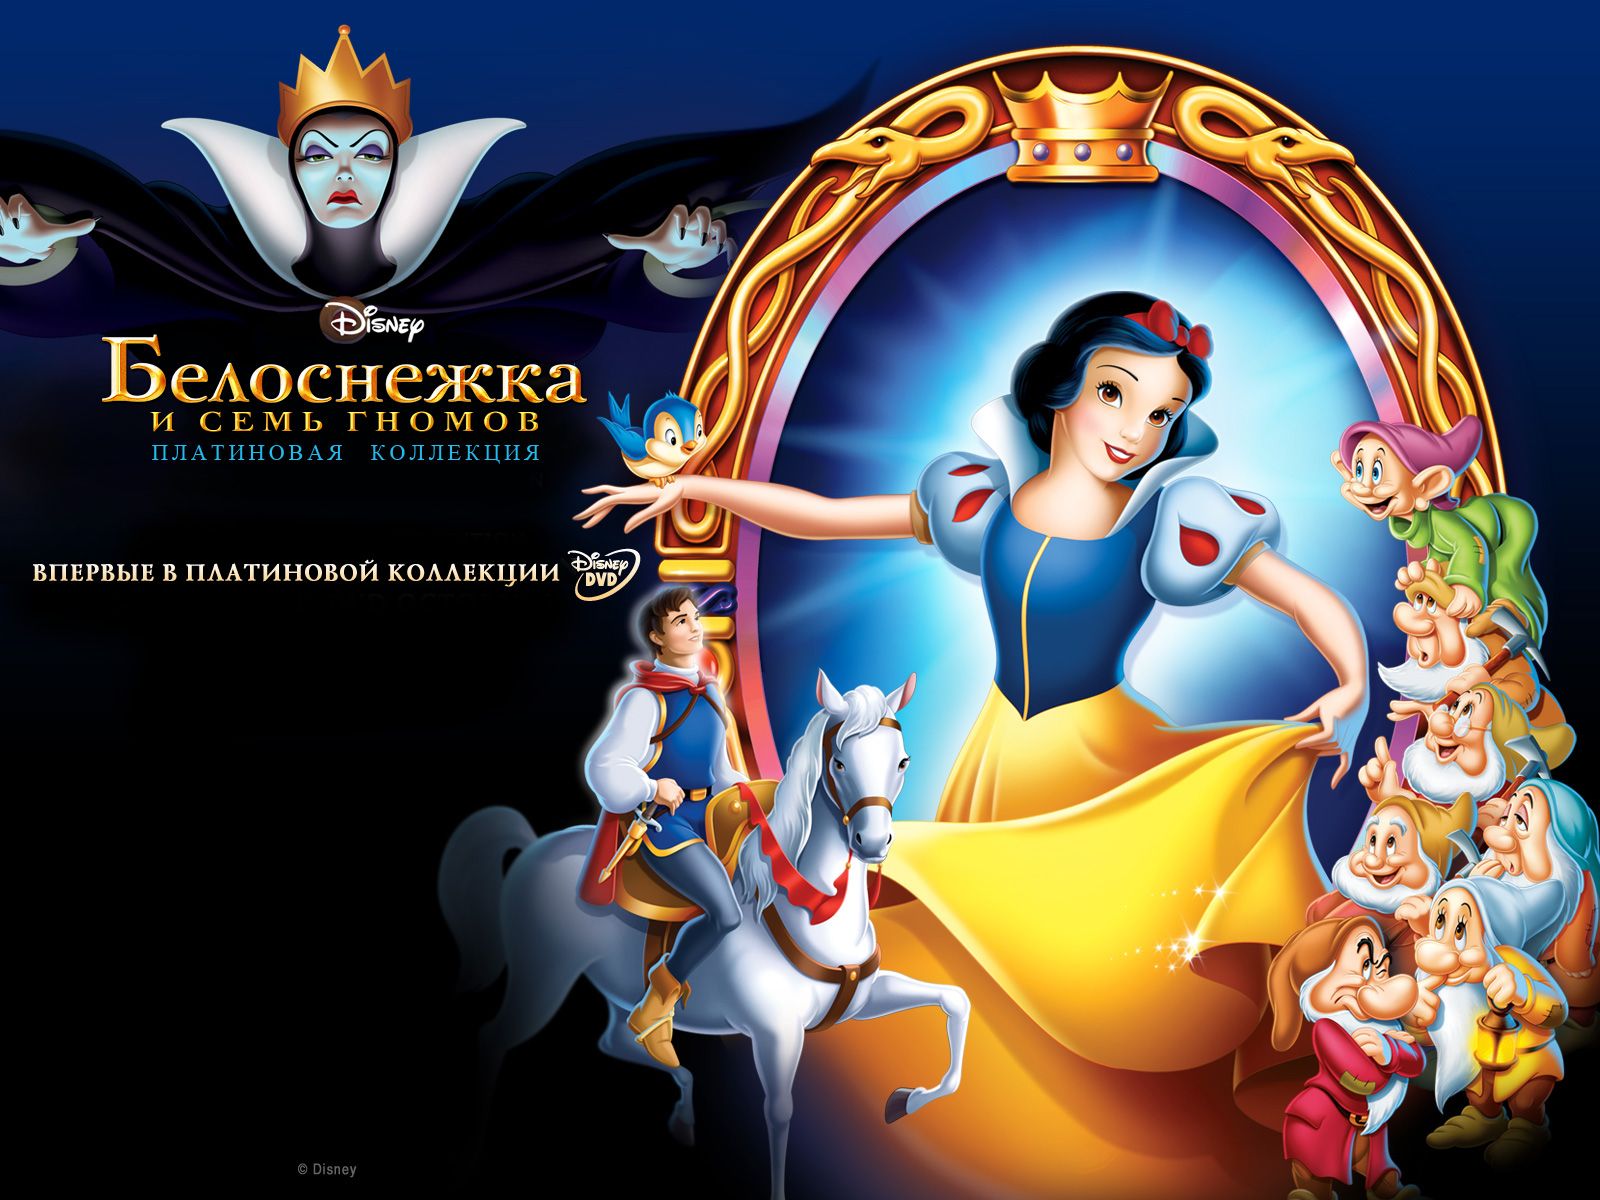 Fondos de dibujos animados de Disney Blancanieves y los siete enanitos